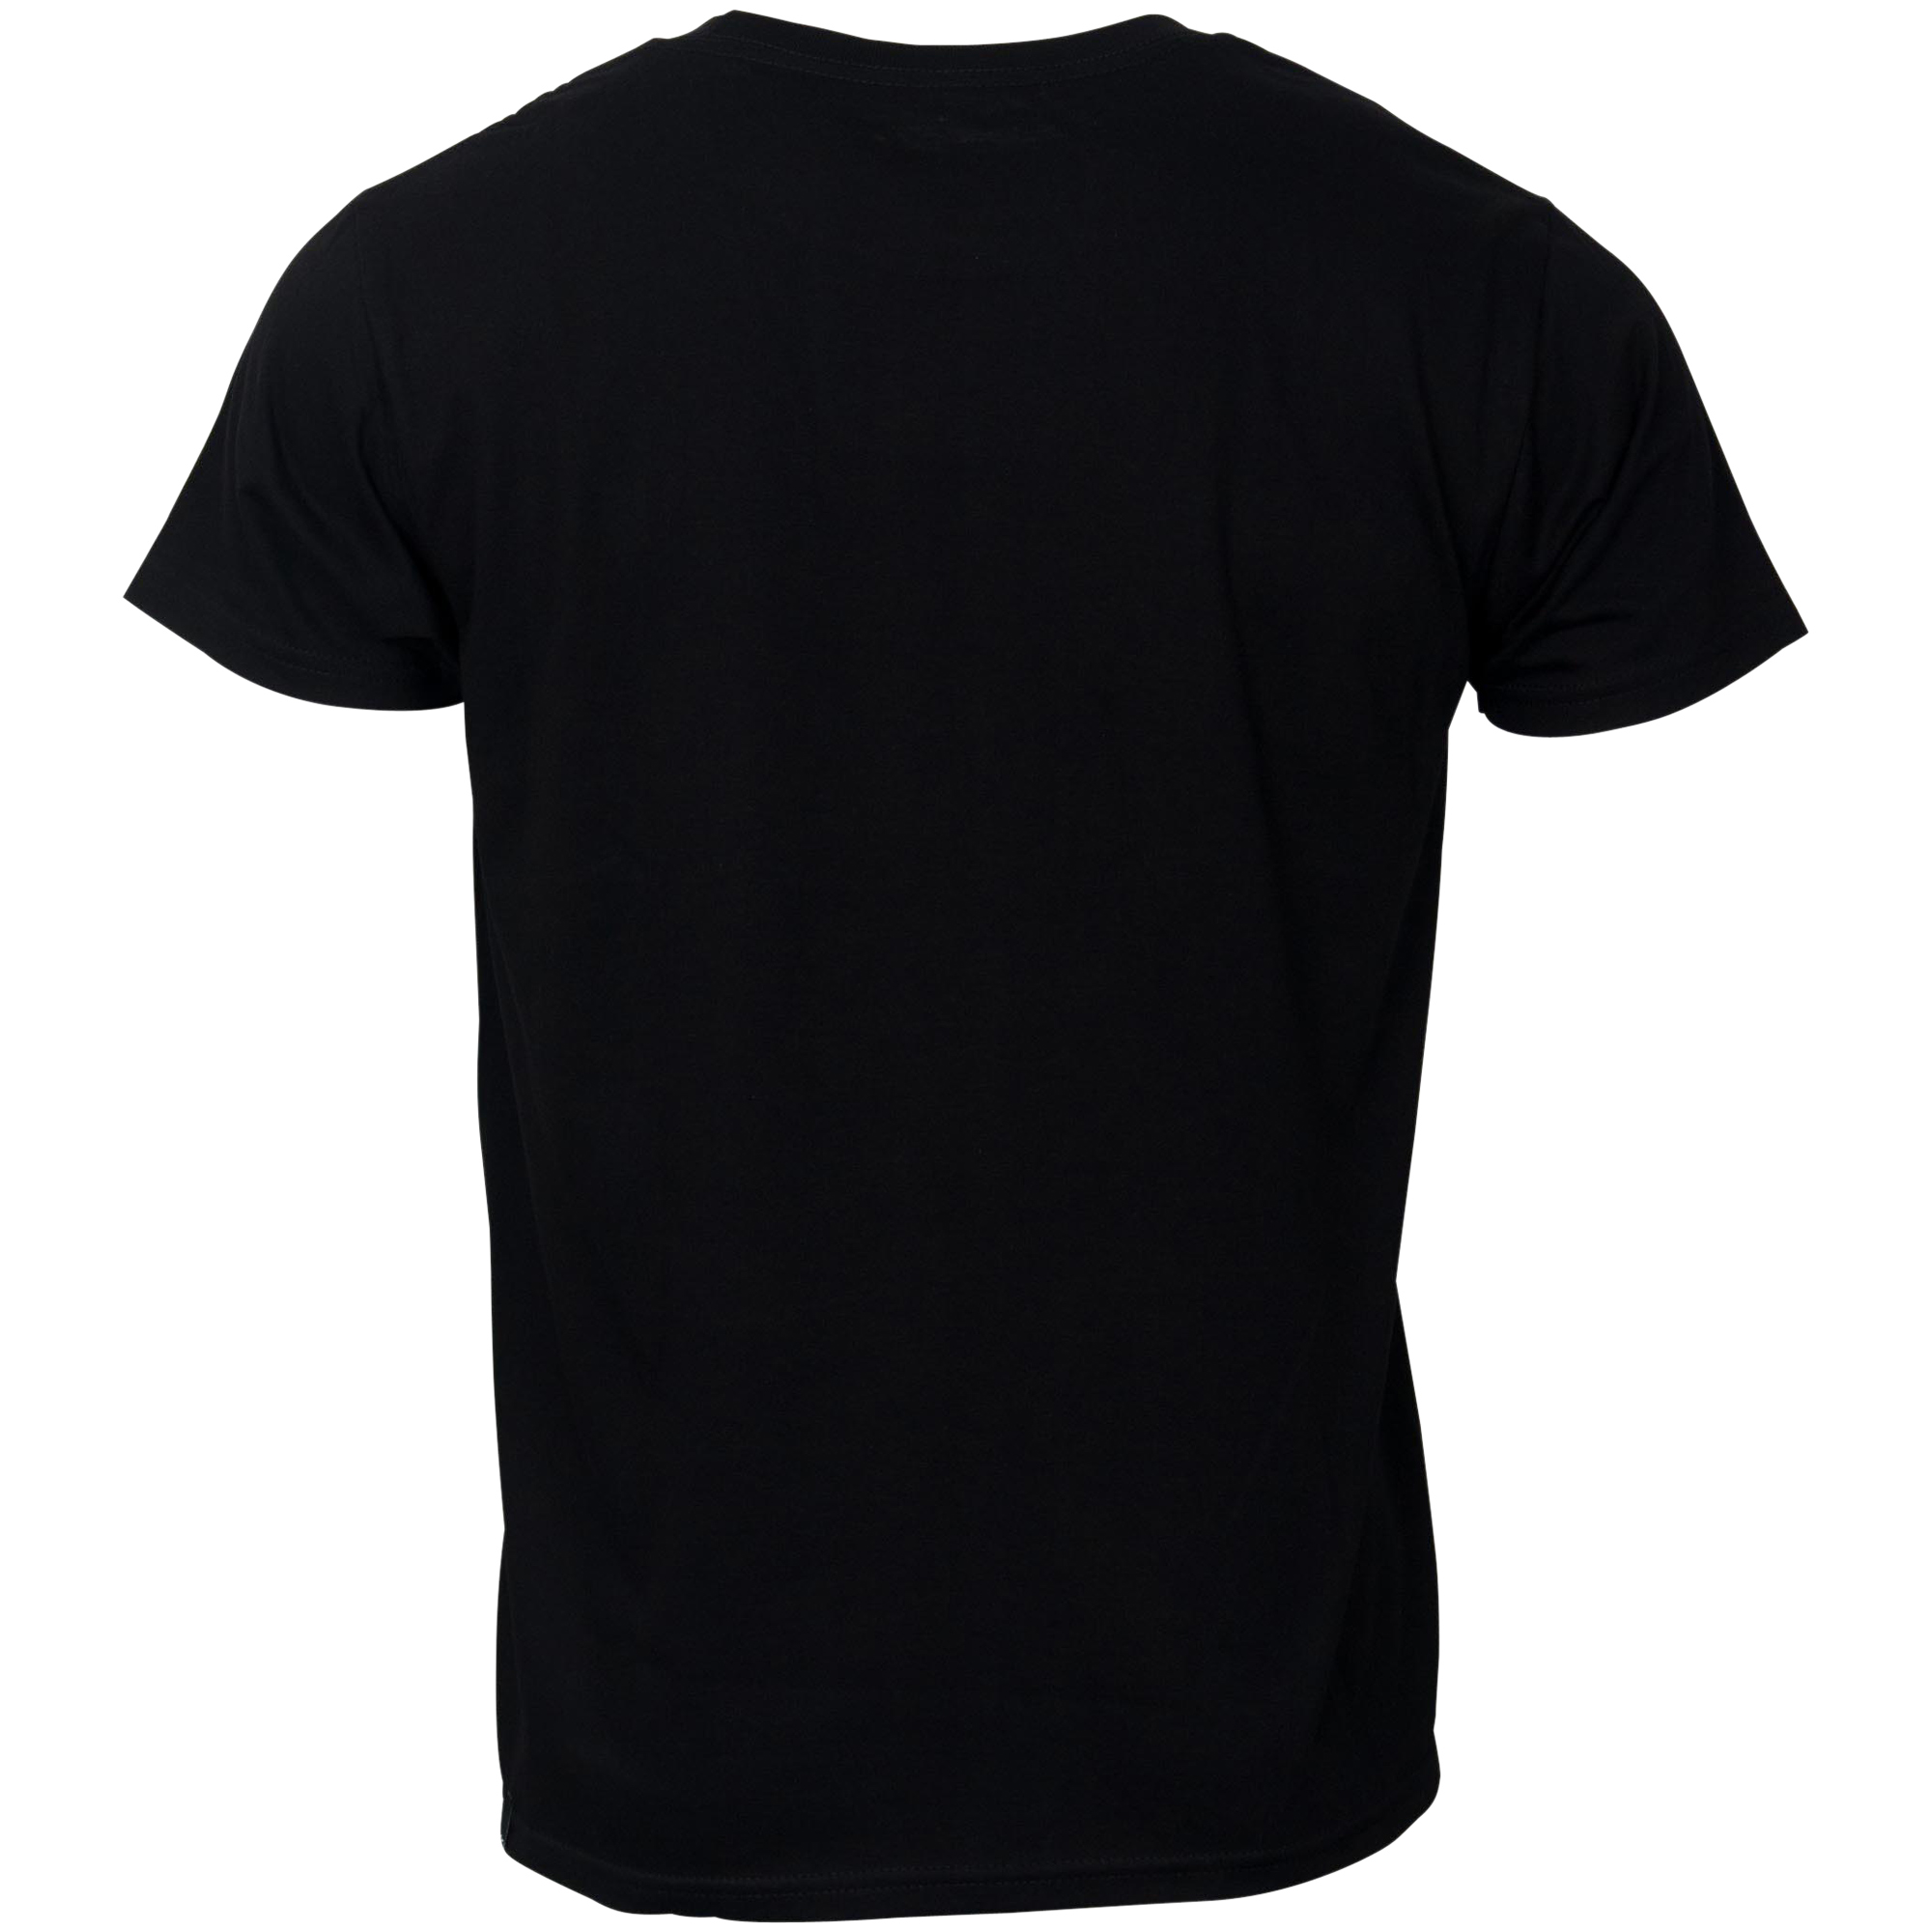 Alpinestars T-Shirt "Ageless schwarz-weiß" - schwarz